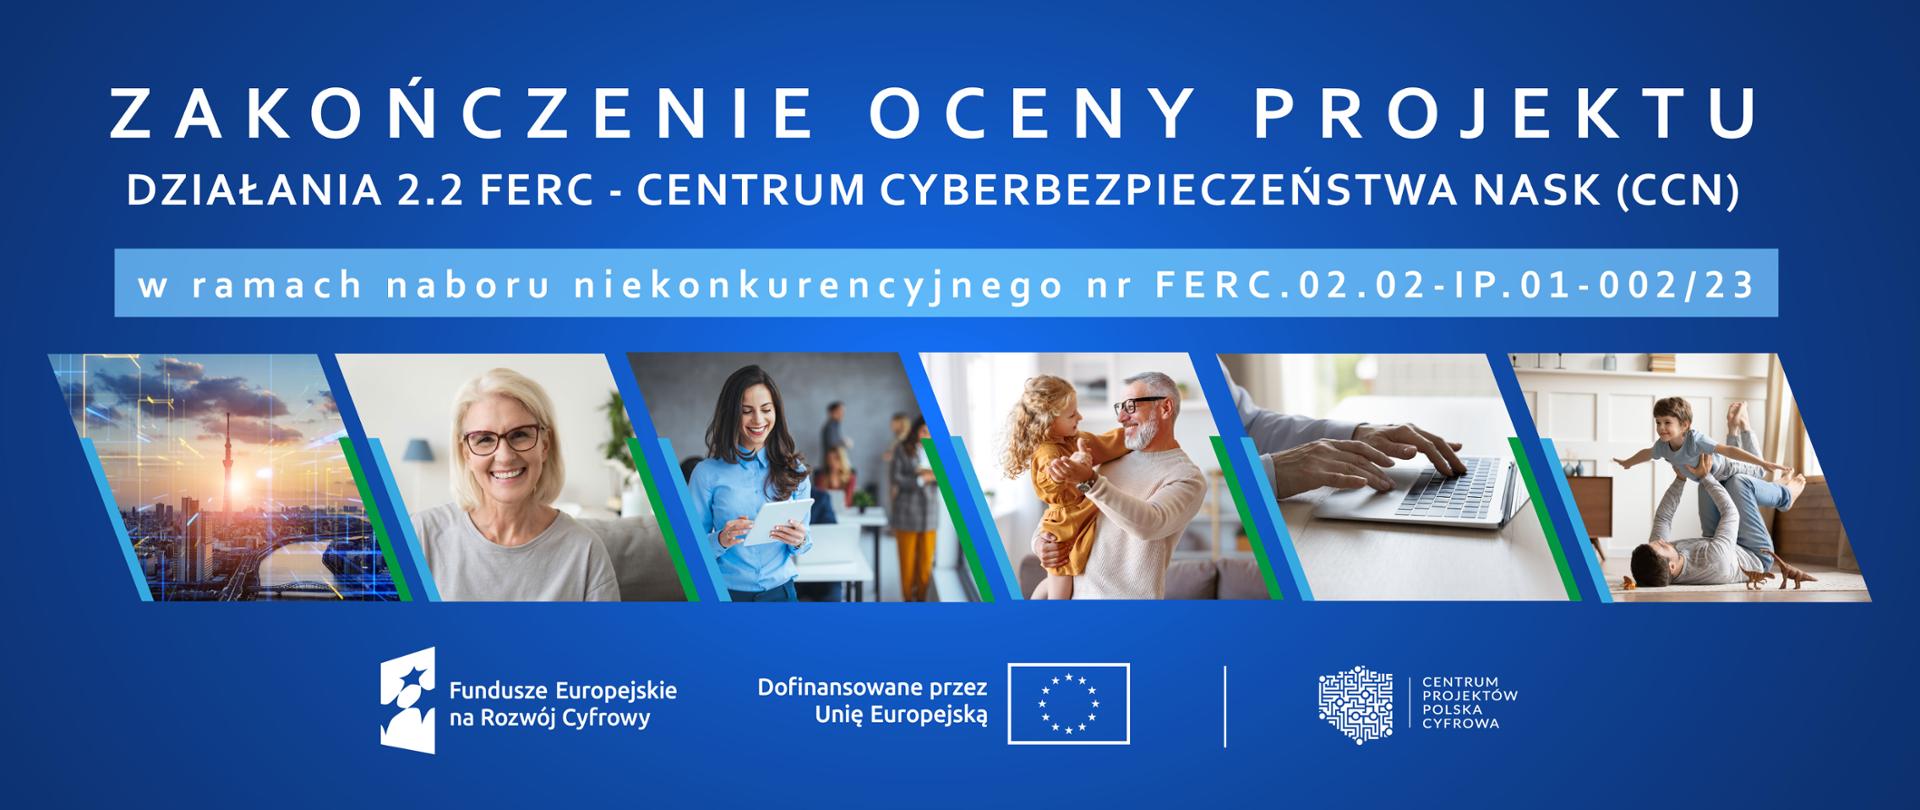 Zakończenie oceny projektu z działania 2.2 FERC - Centrum Cyberbezpieczeństwa NASK (CCN)